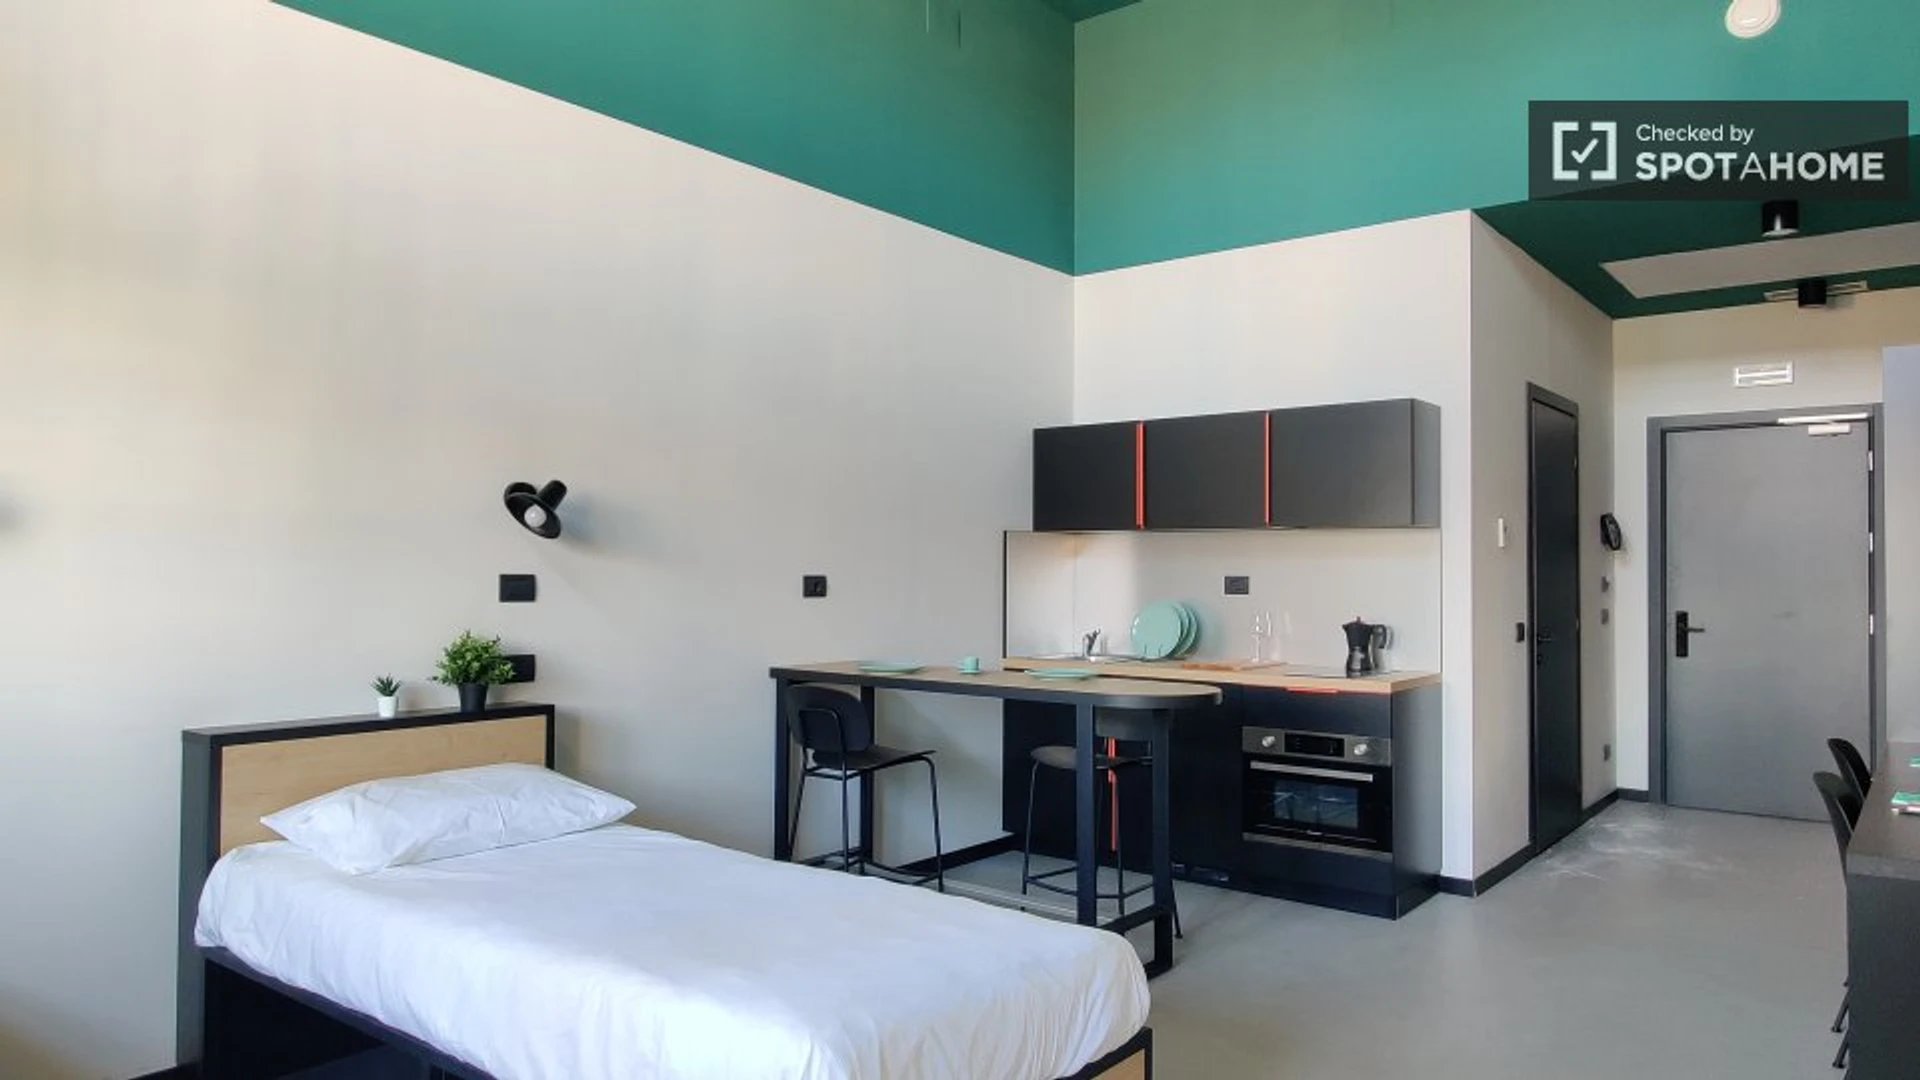 Quarto para alugar num apartamento partilhado em Milão